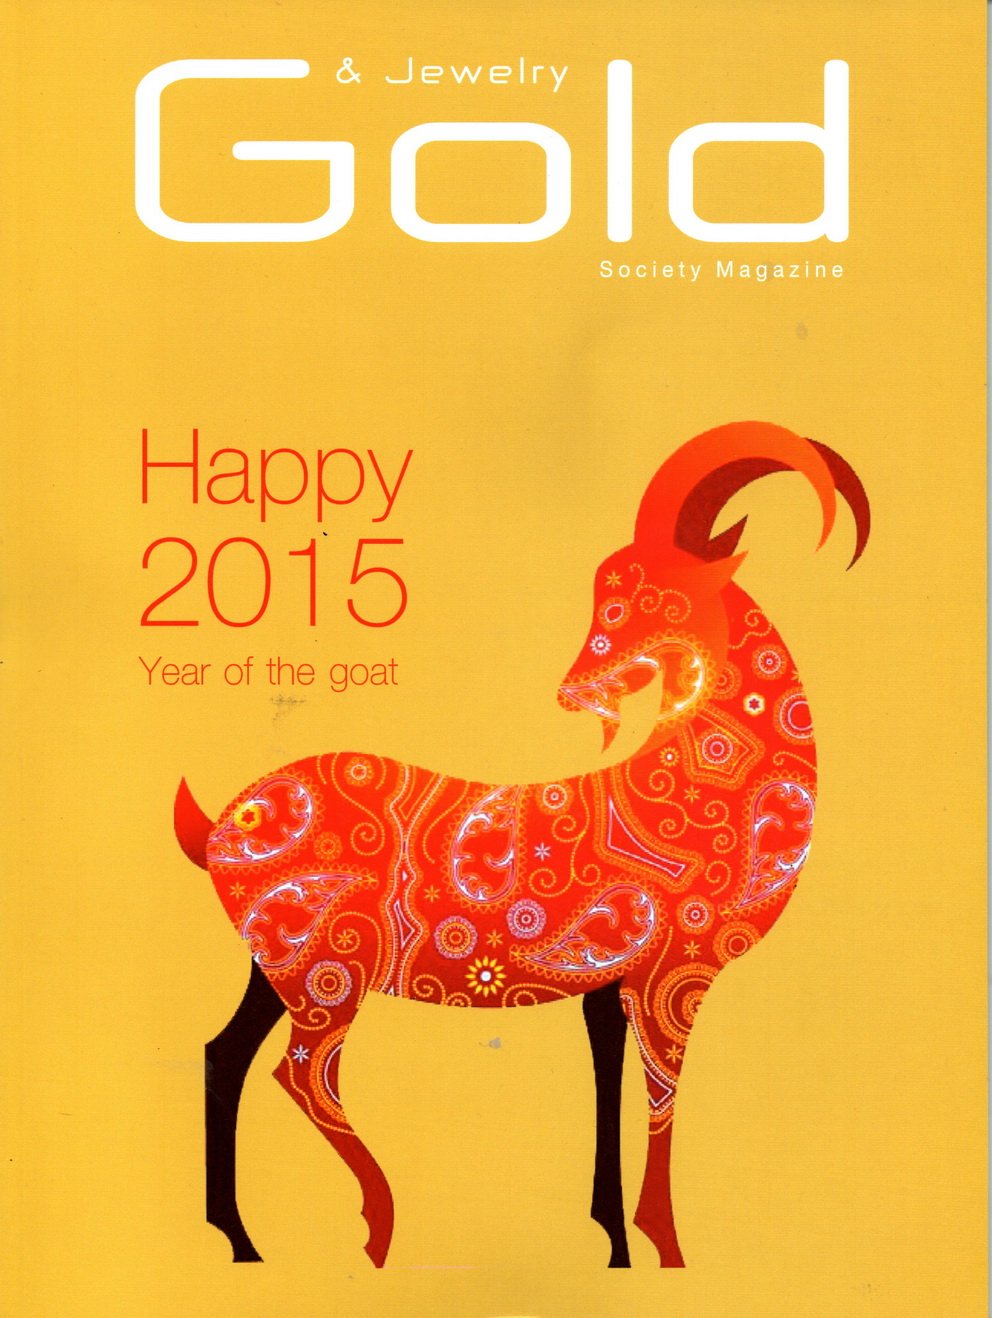 Lee Seng Jewelry ในนิตยสาร Gold & Jewelry Society ประจำเดือน กุมภาพันธ์-มีนาคม 2015